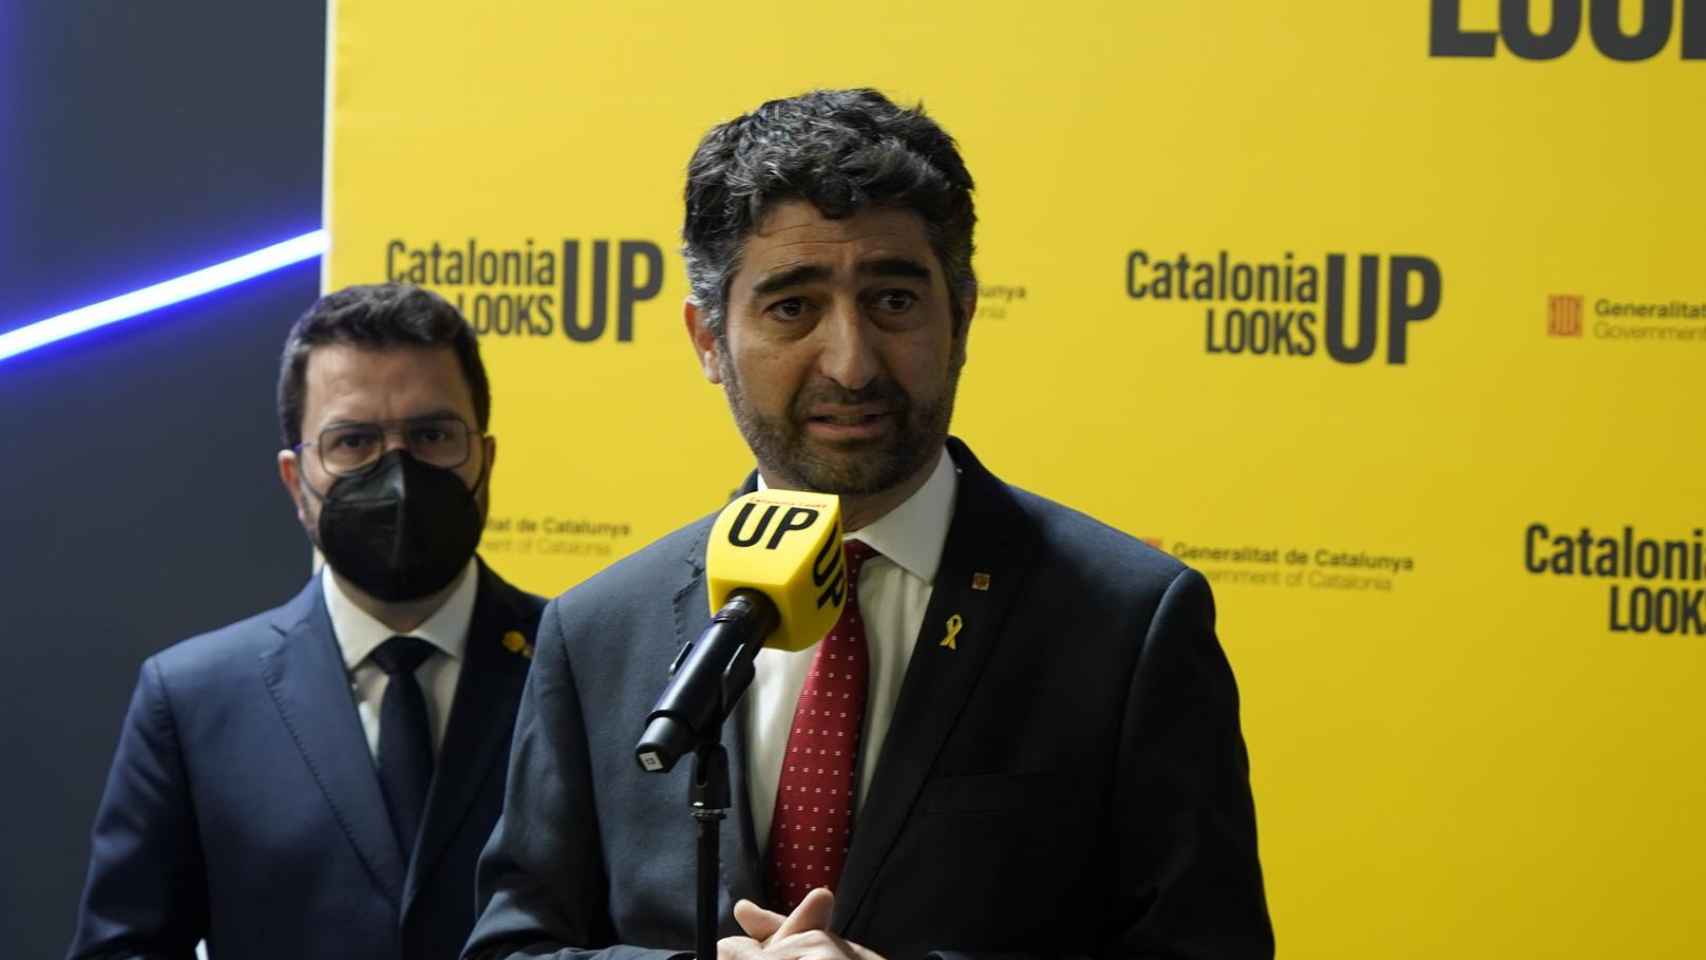 Jordi Puigneró, Vicepresidente de la Generalidad de Cataluña, anuncia el lanzamiento de satelites / LUIS MIGUEL AÑÓN ( CG)